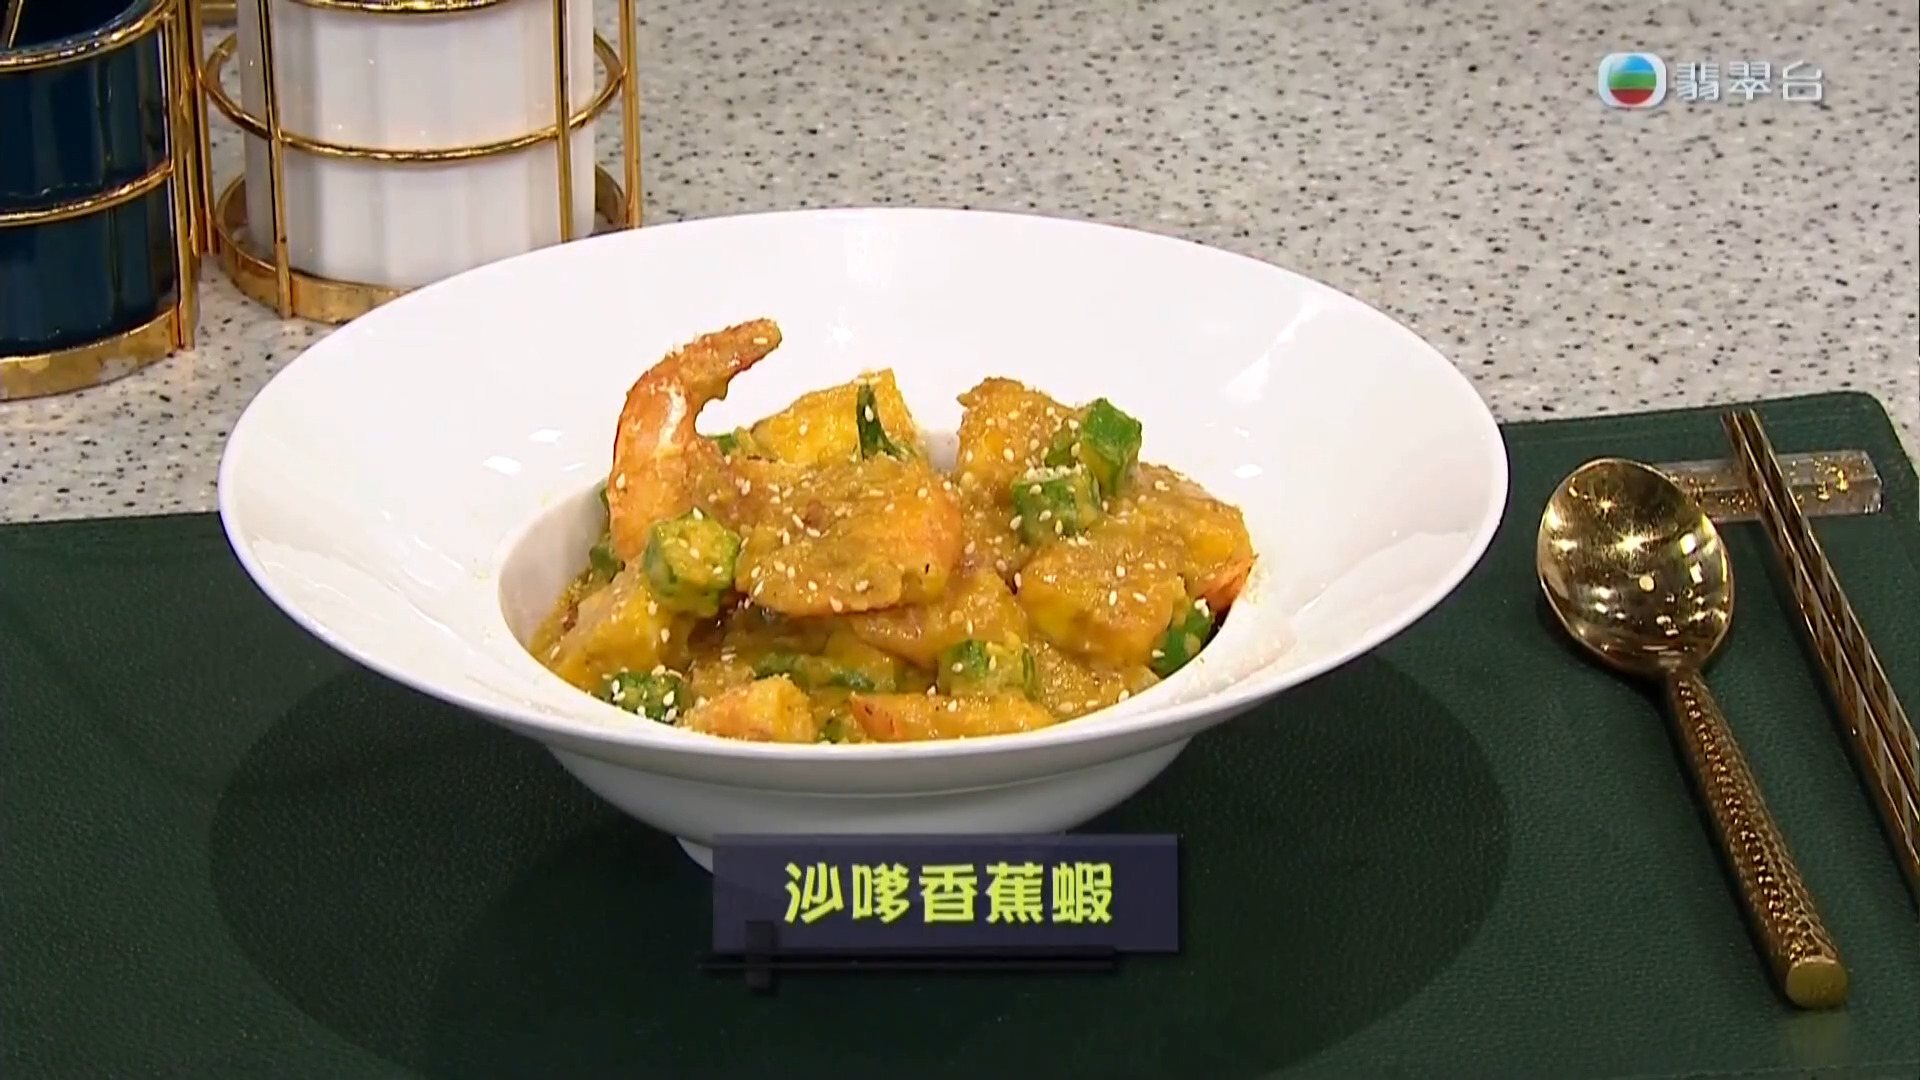 睇餸食飯-Whats For Dinner